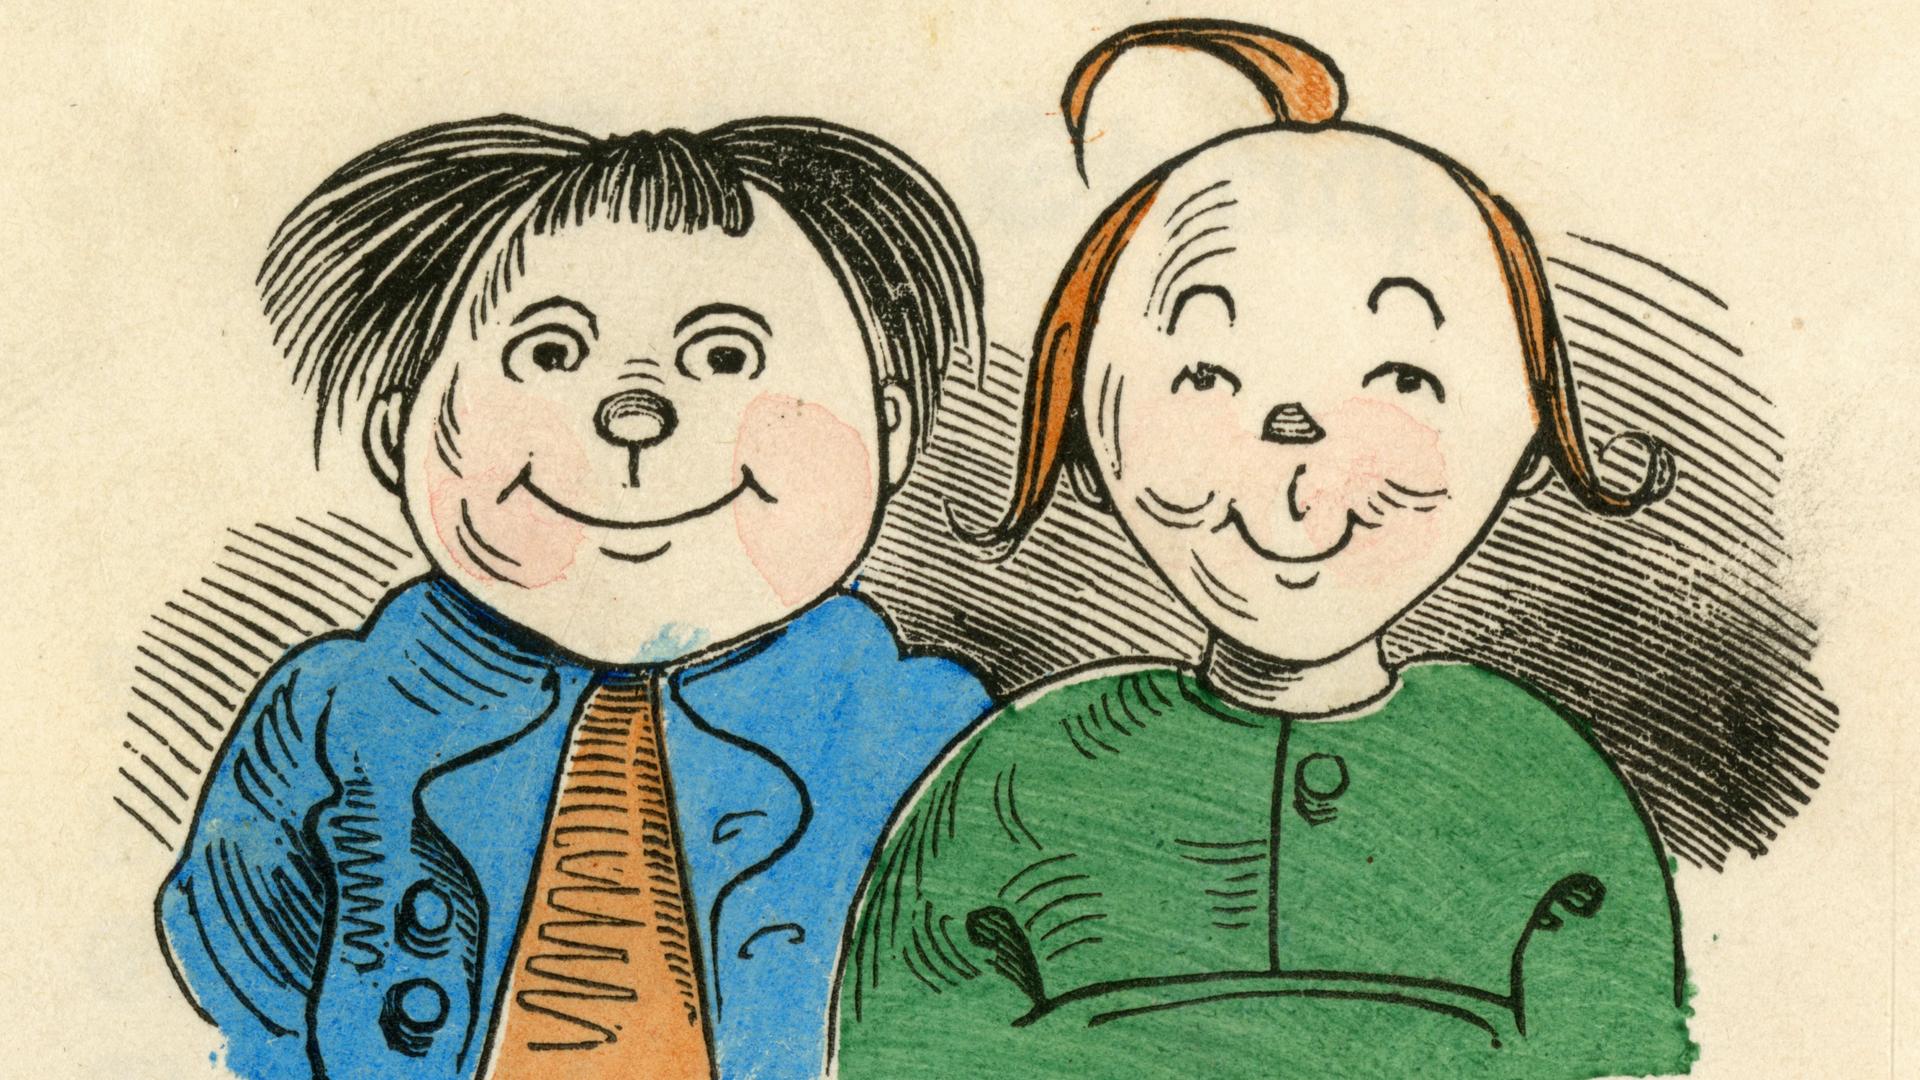 Zeichnung der beiden Lausbuben Max und Moritz, die einen mit verschmitztem Blick ansehen